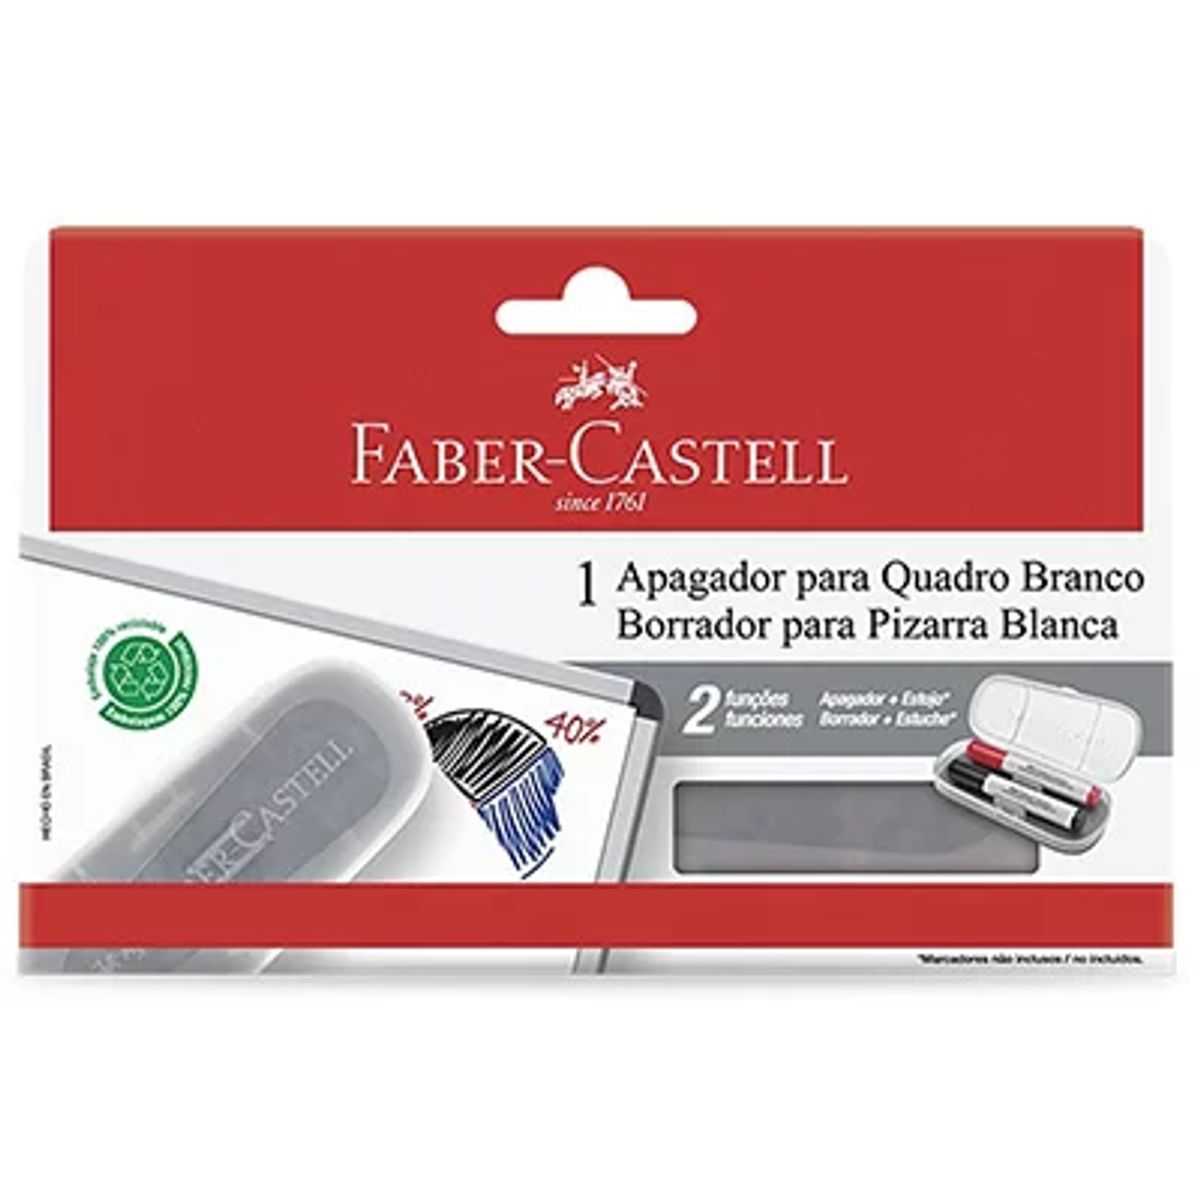 Apagador para Quadro Branco Faber Castell image number 0